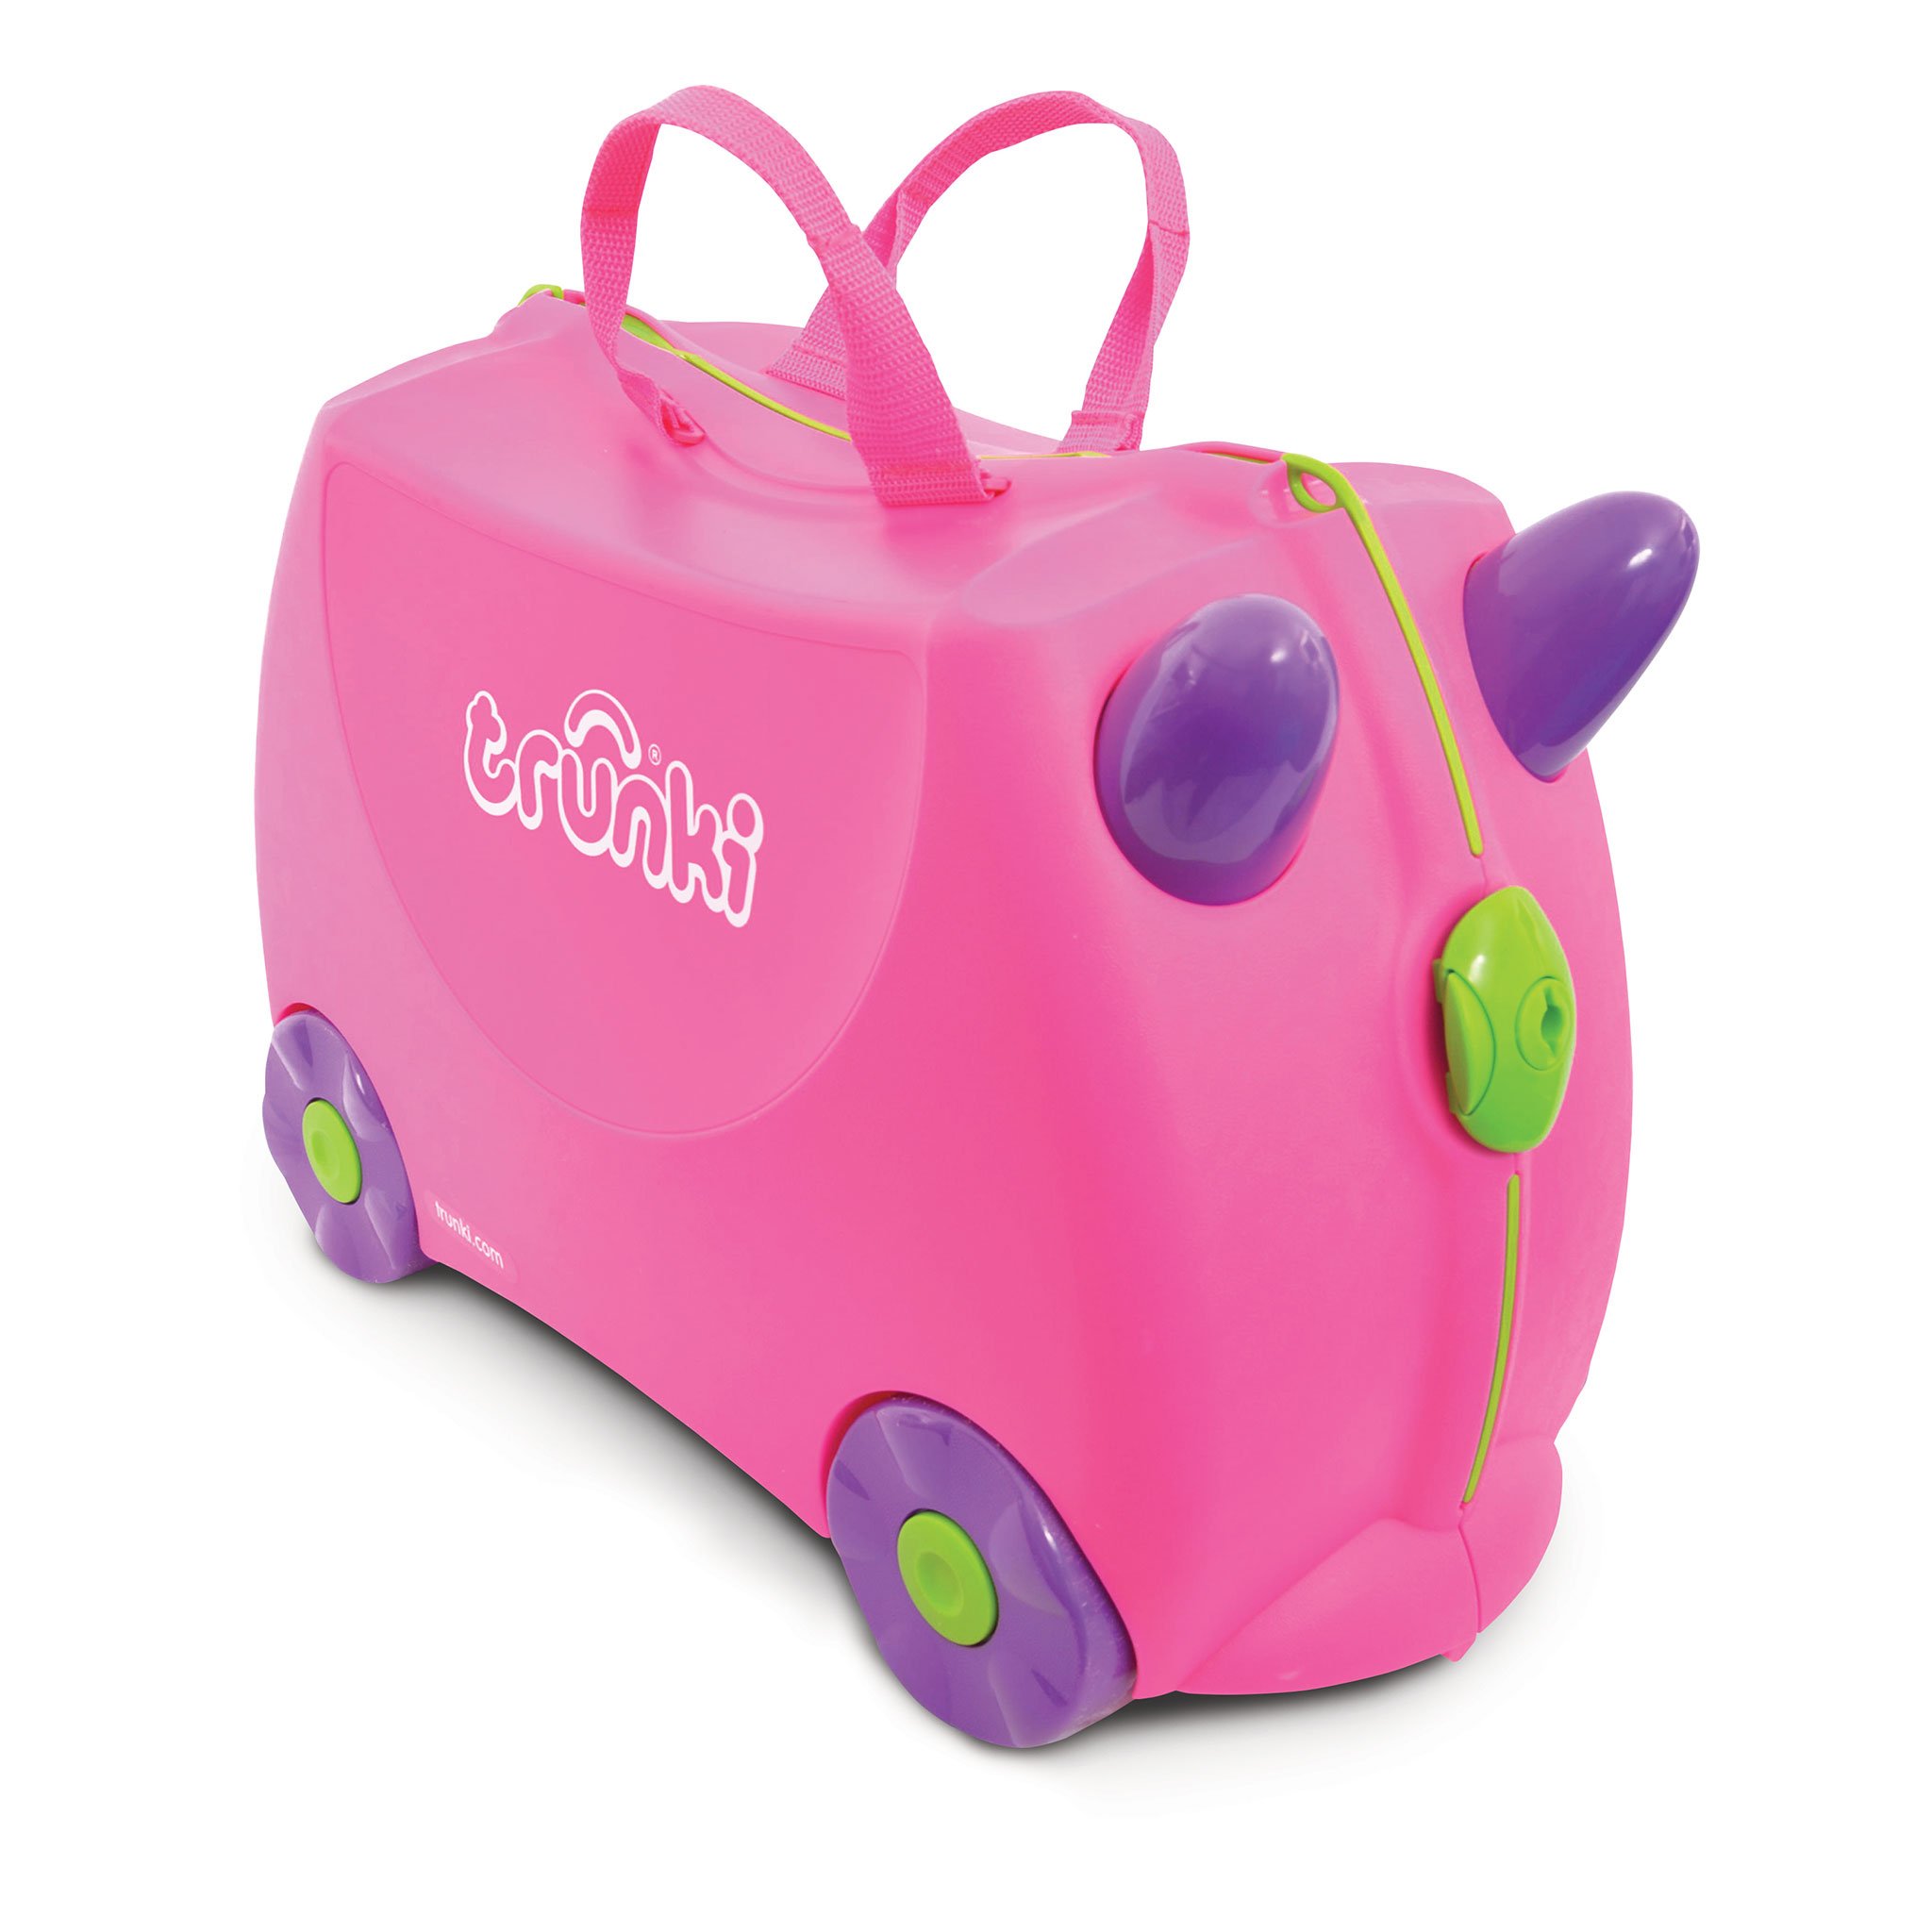 TR0061-GB-trunki-valigetta-cavalcabile-traino-bambini-viaggiare-colorata.jpg